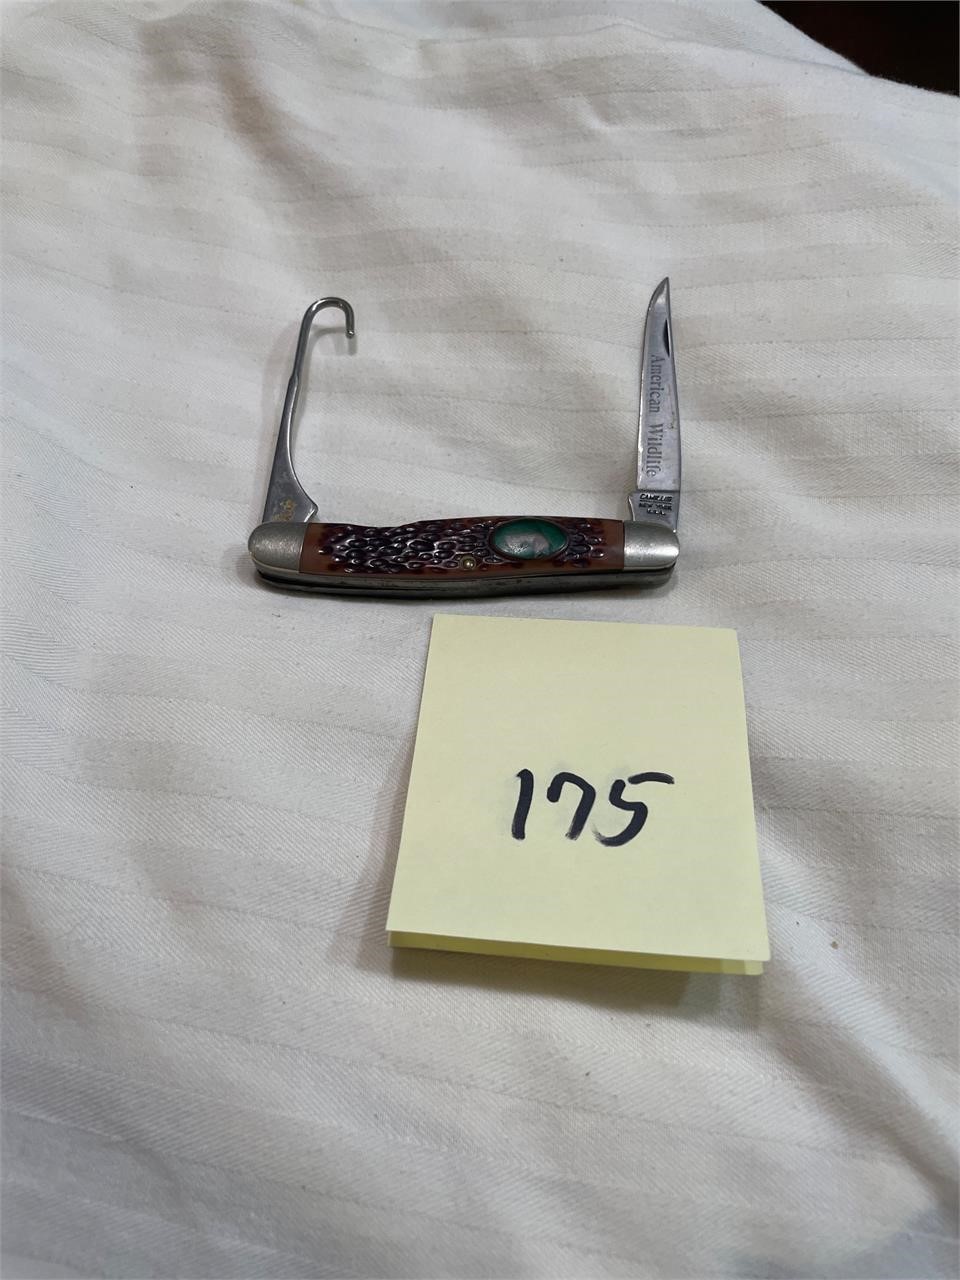 Folding hook knife #175